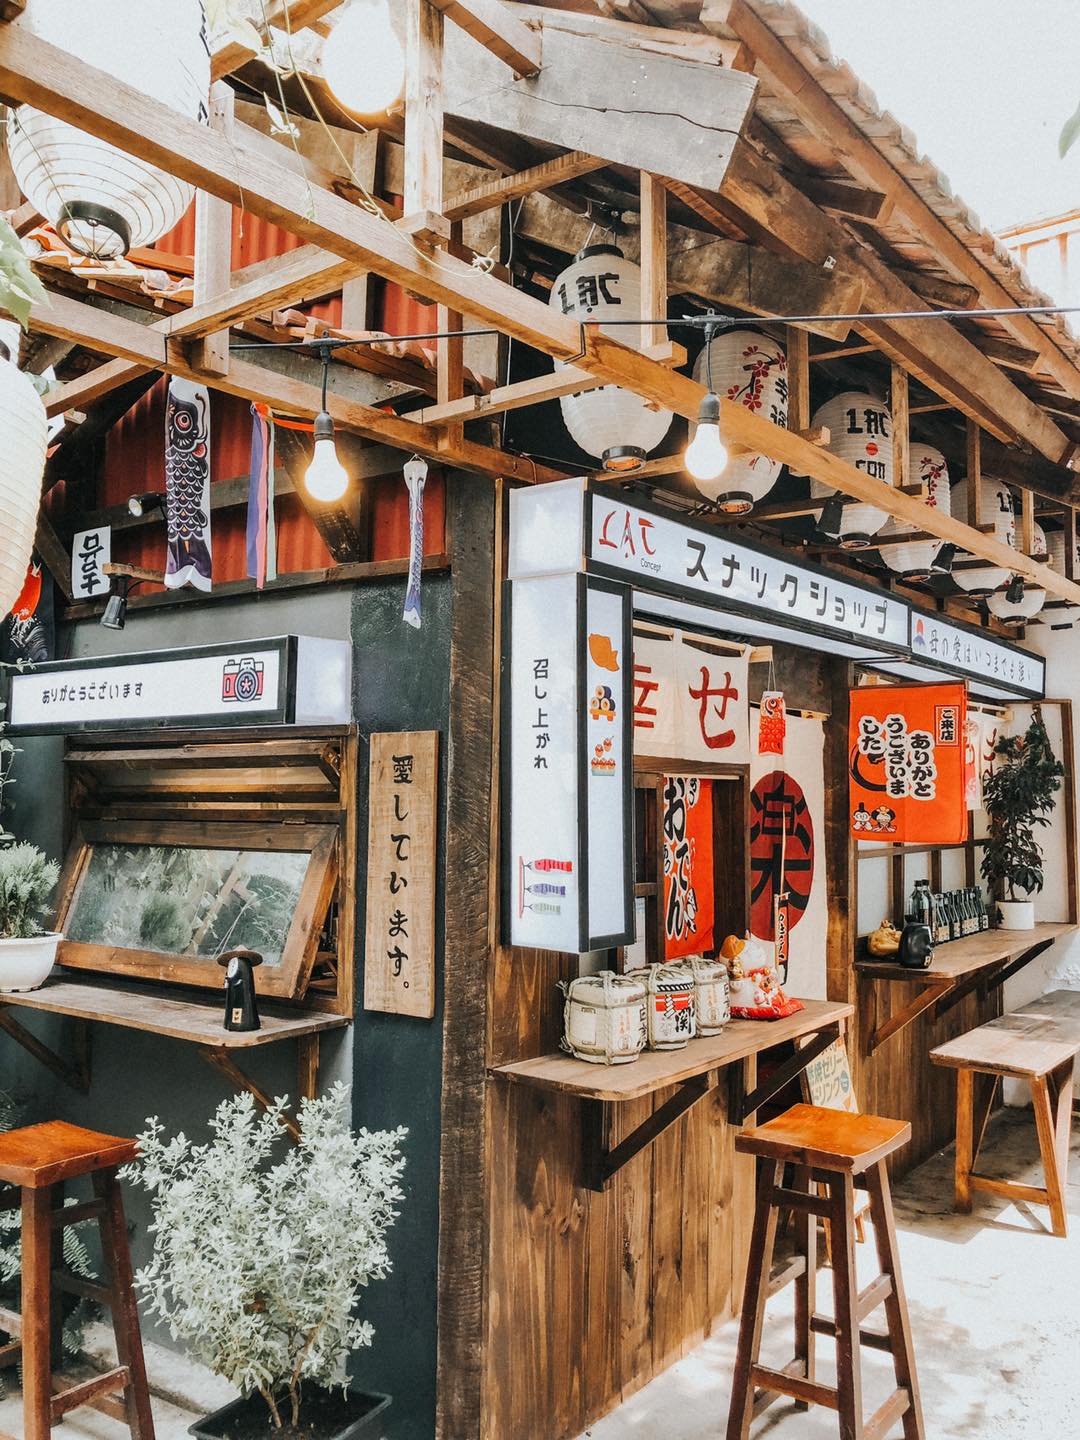  Lạc - một quán cafe phong cách Nhật Bản
